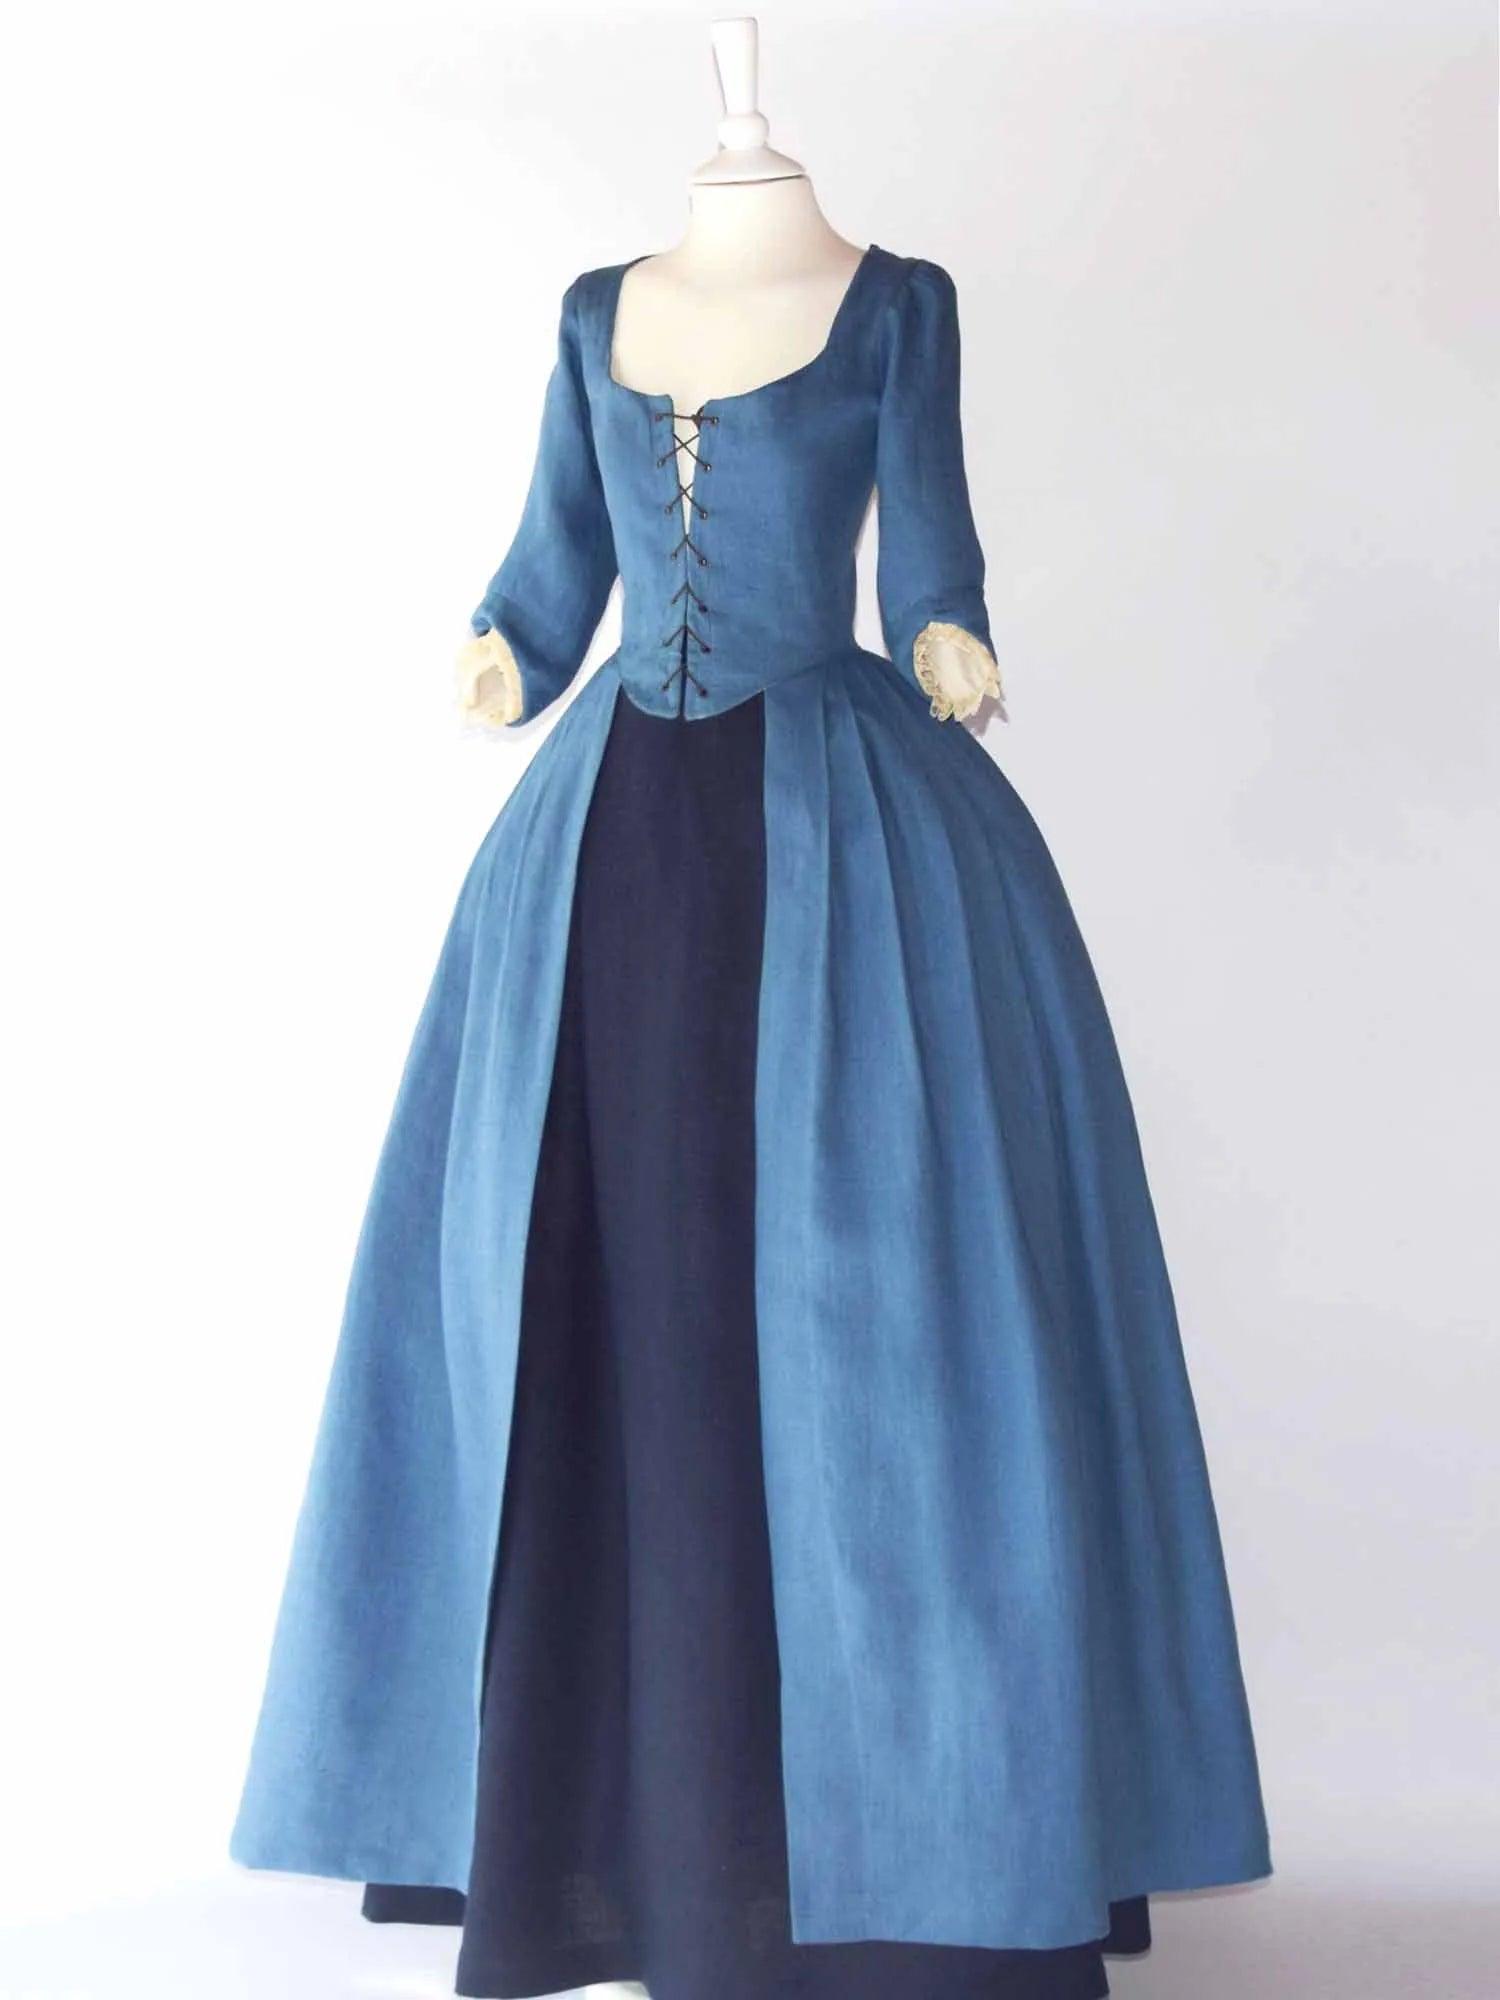 18th Century Overdress in Steel Blue Linen &amp; Skirt - Atelier Serraspina